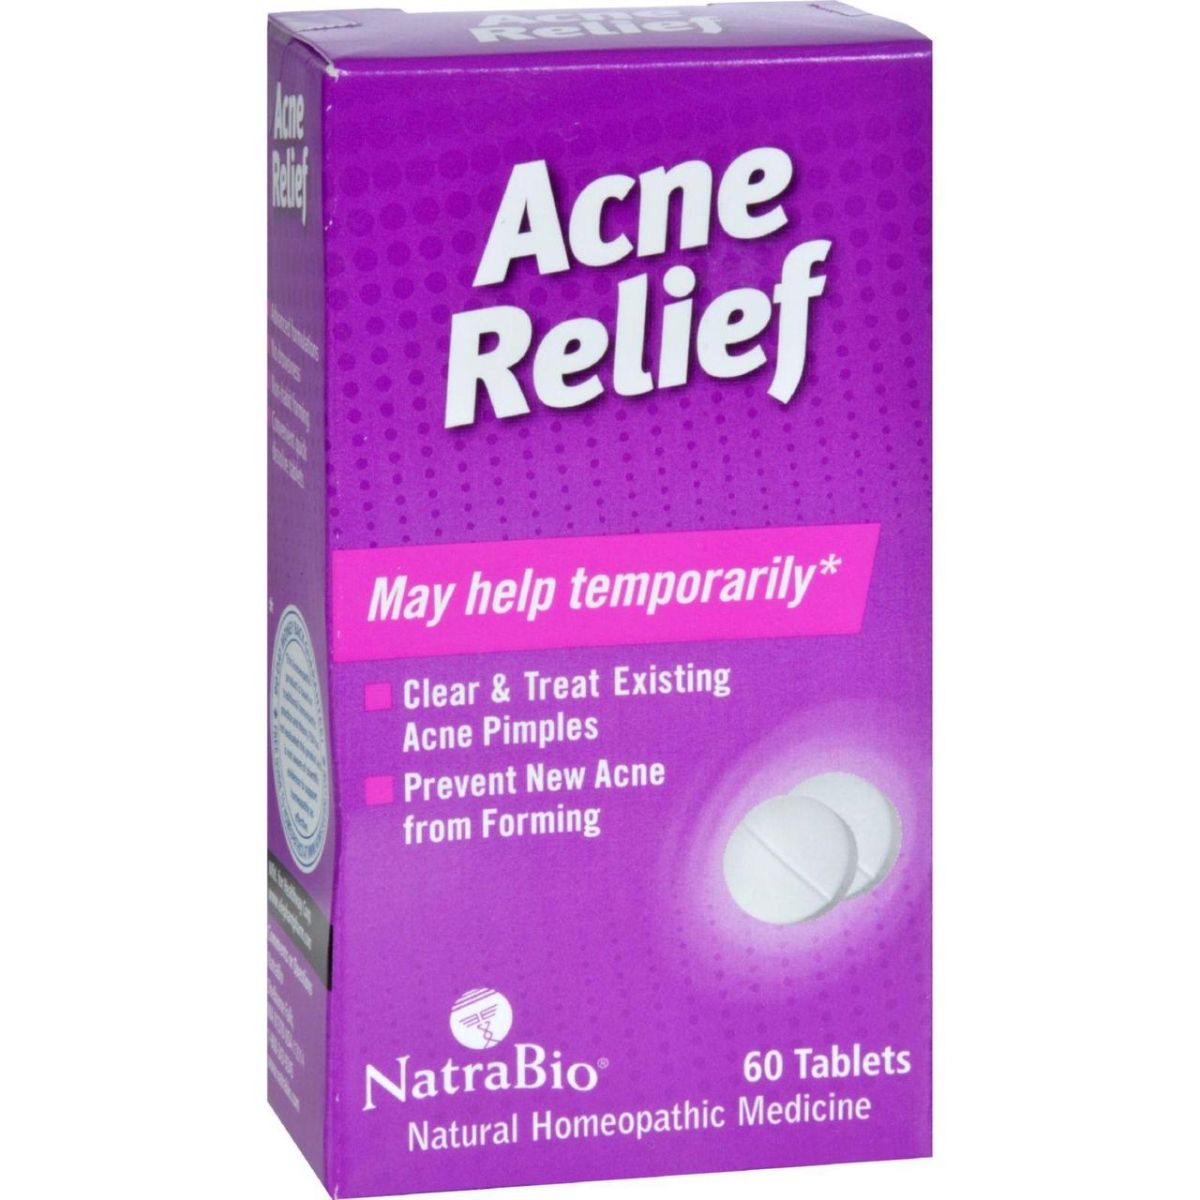 Natrabio Hg0737759 Acne Relief - 60 Tablets